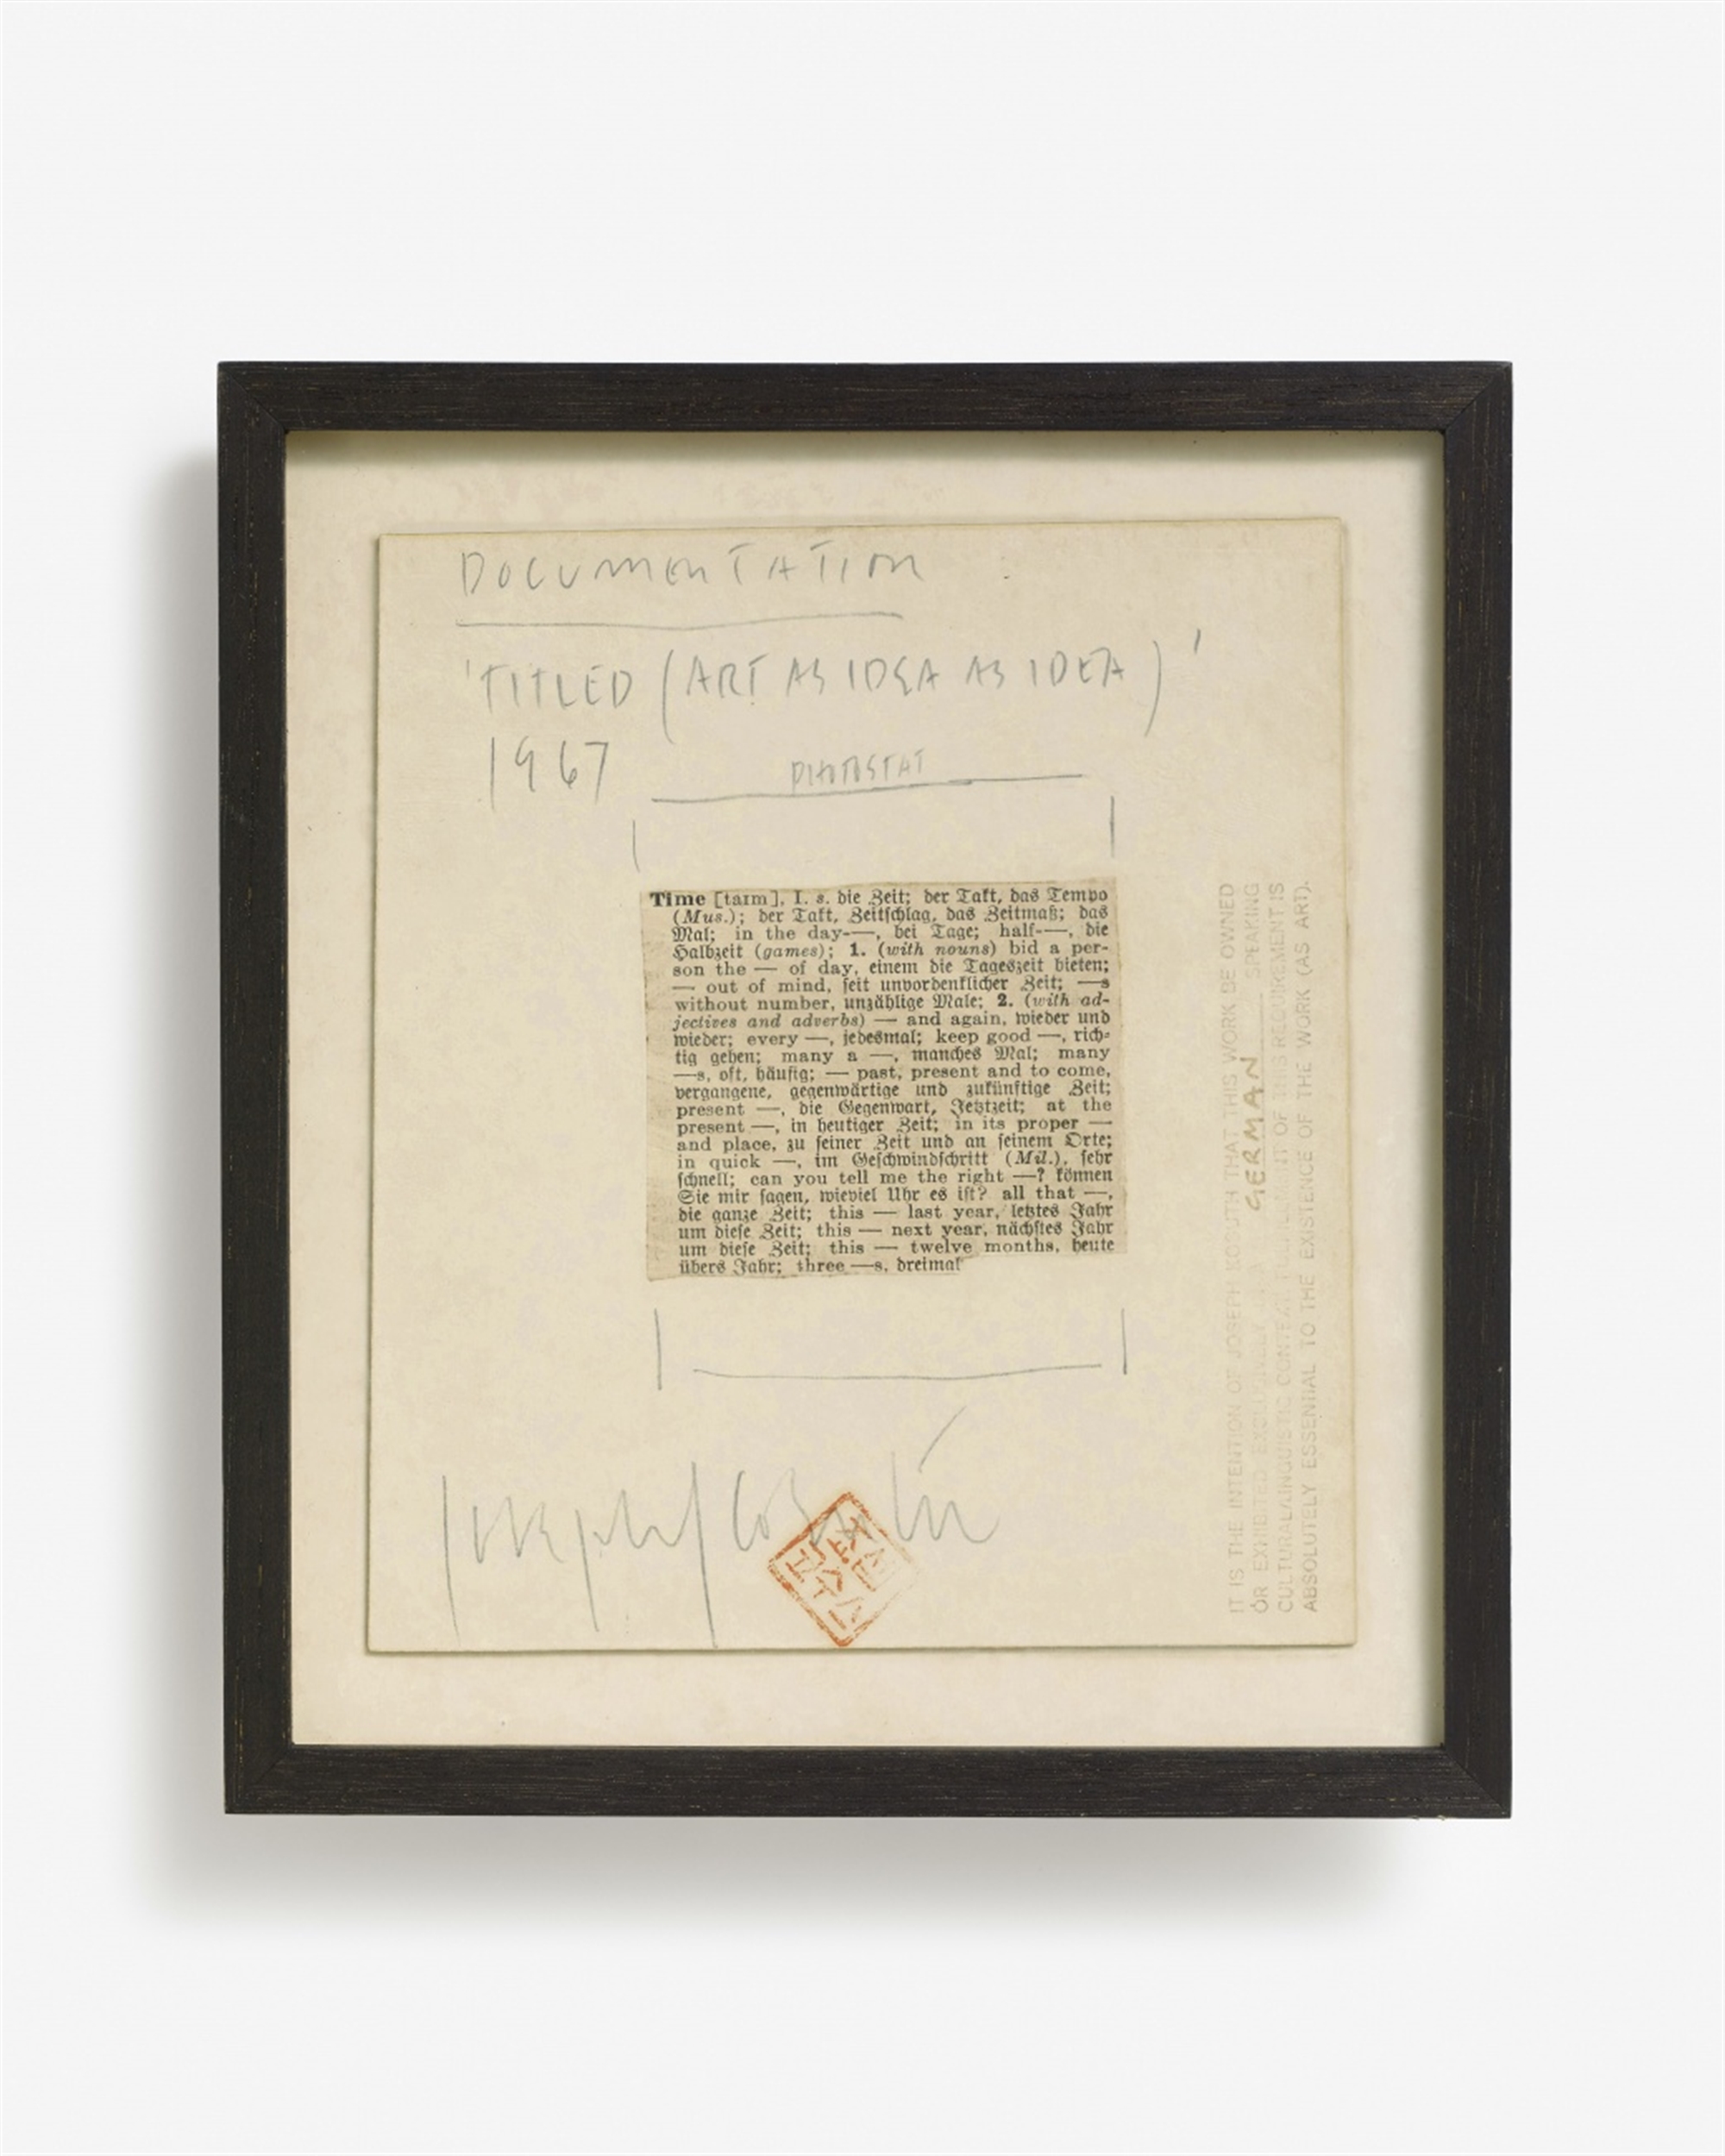 Joseph Kosuth, Art As Idea As Idea - Image 2 of 2